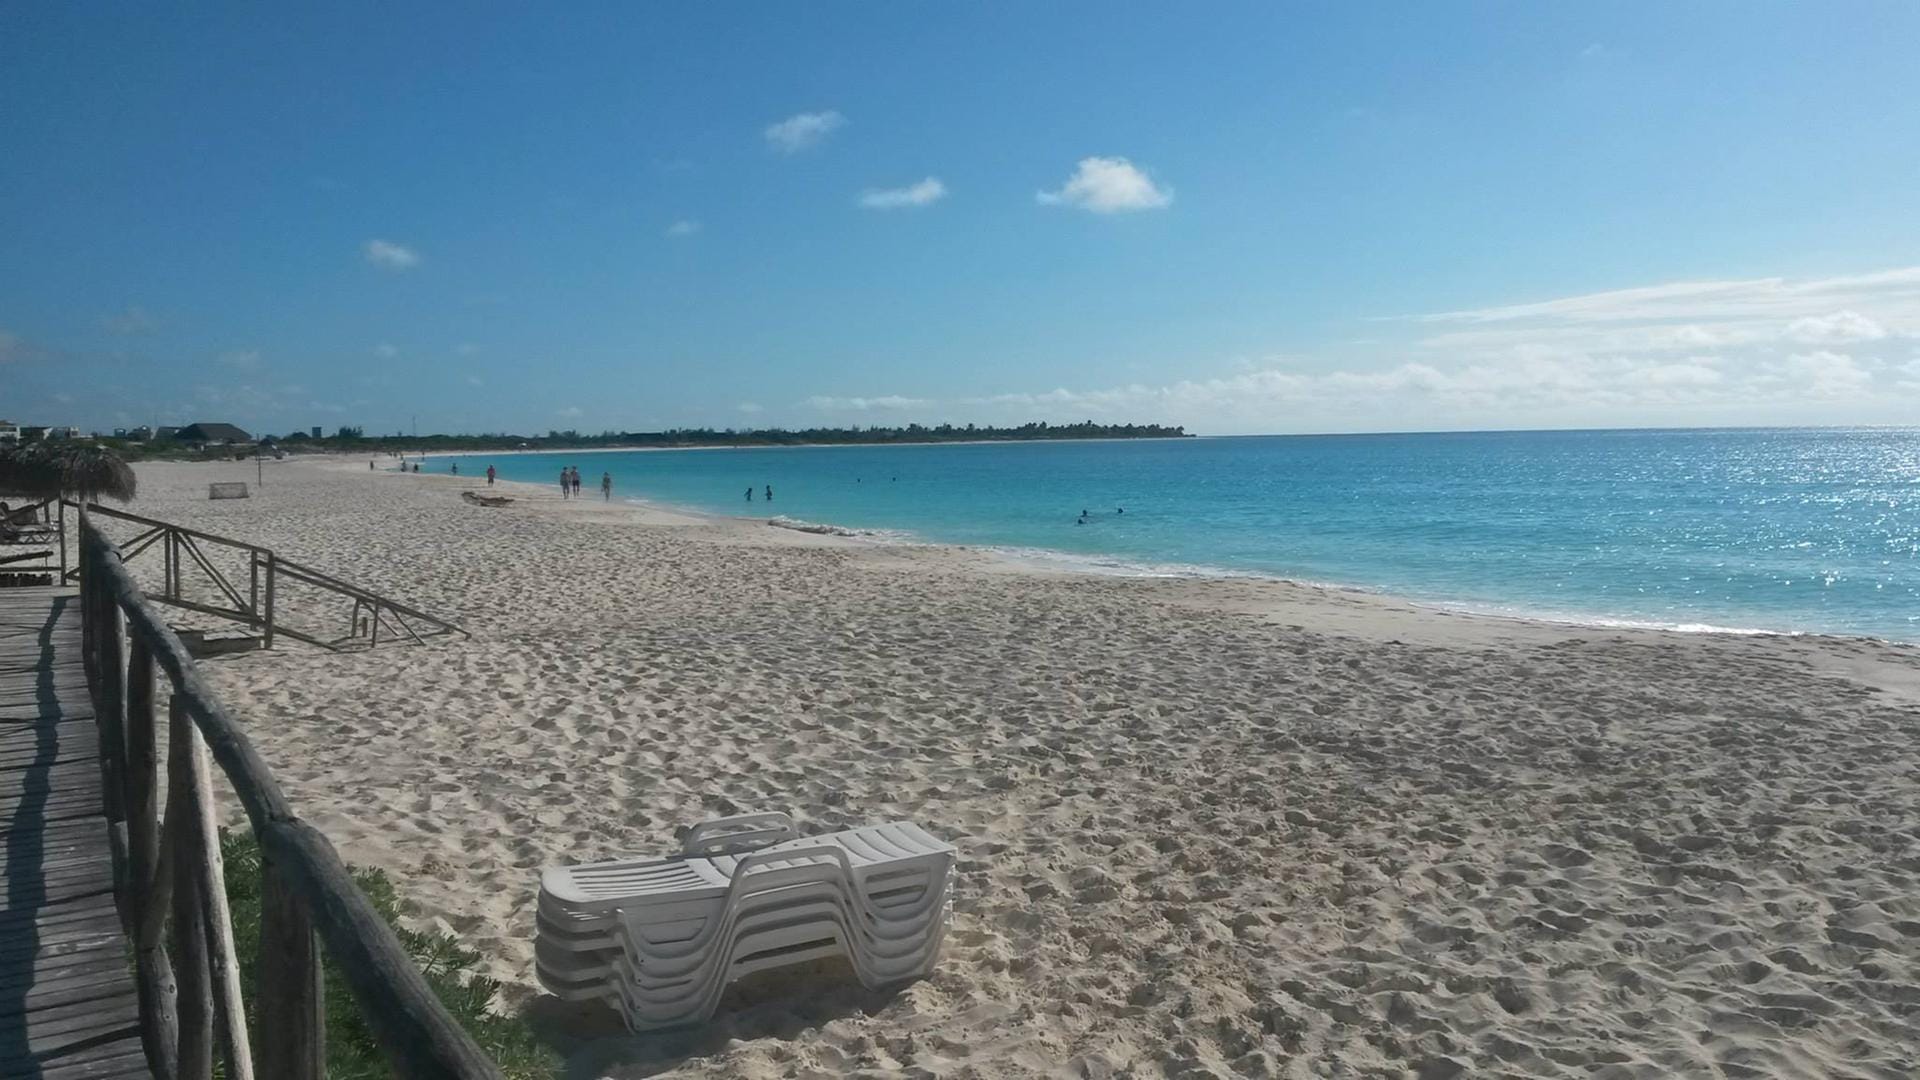 Wer mehr Idylle am Strand sucht, muss eine Kuba vorgelagerte Insel bereisen - wie zum Beispiel Cayo Largo.